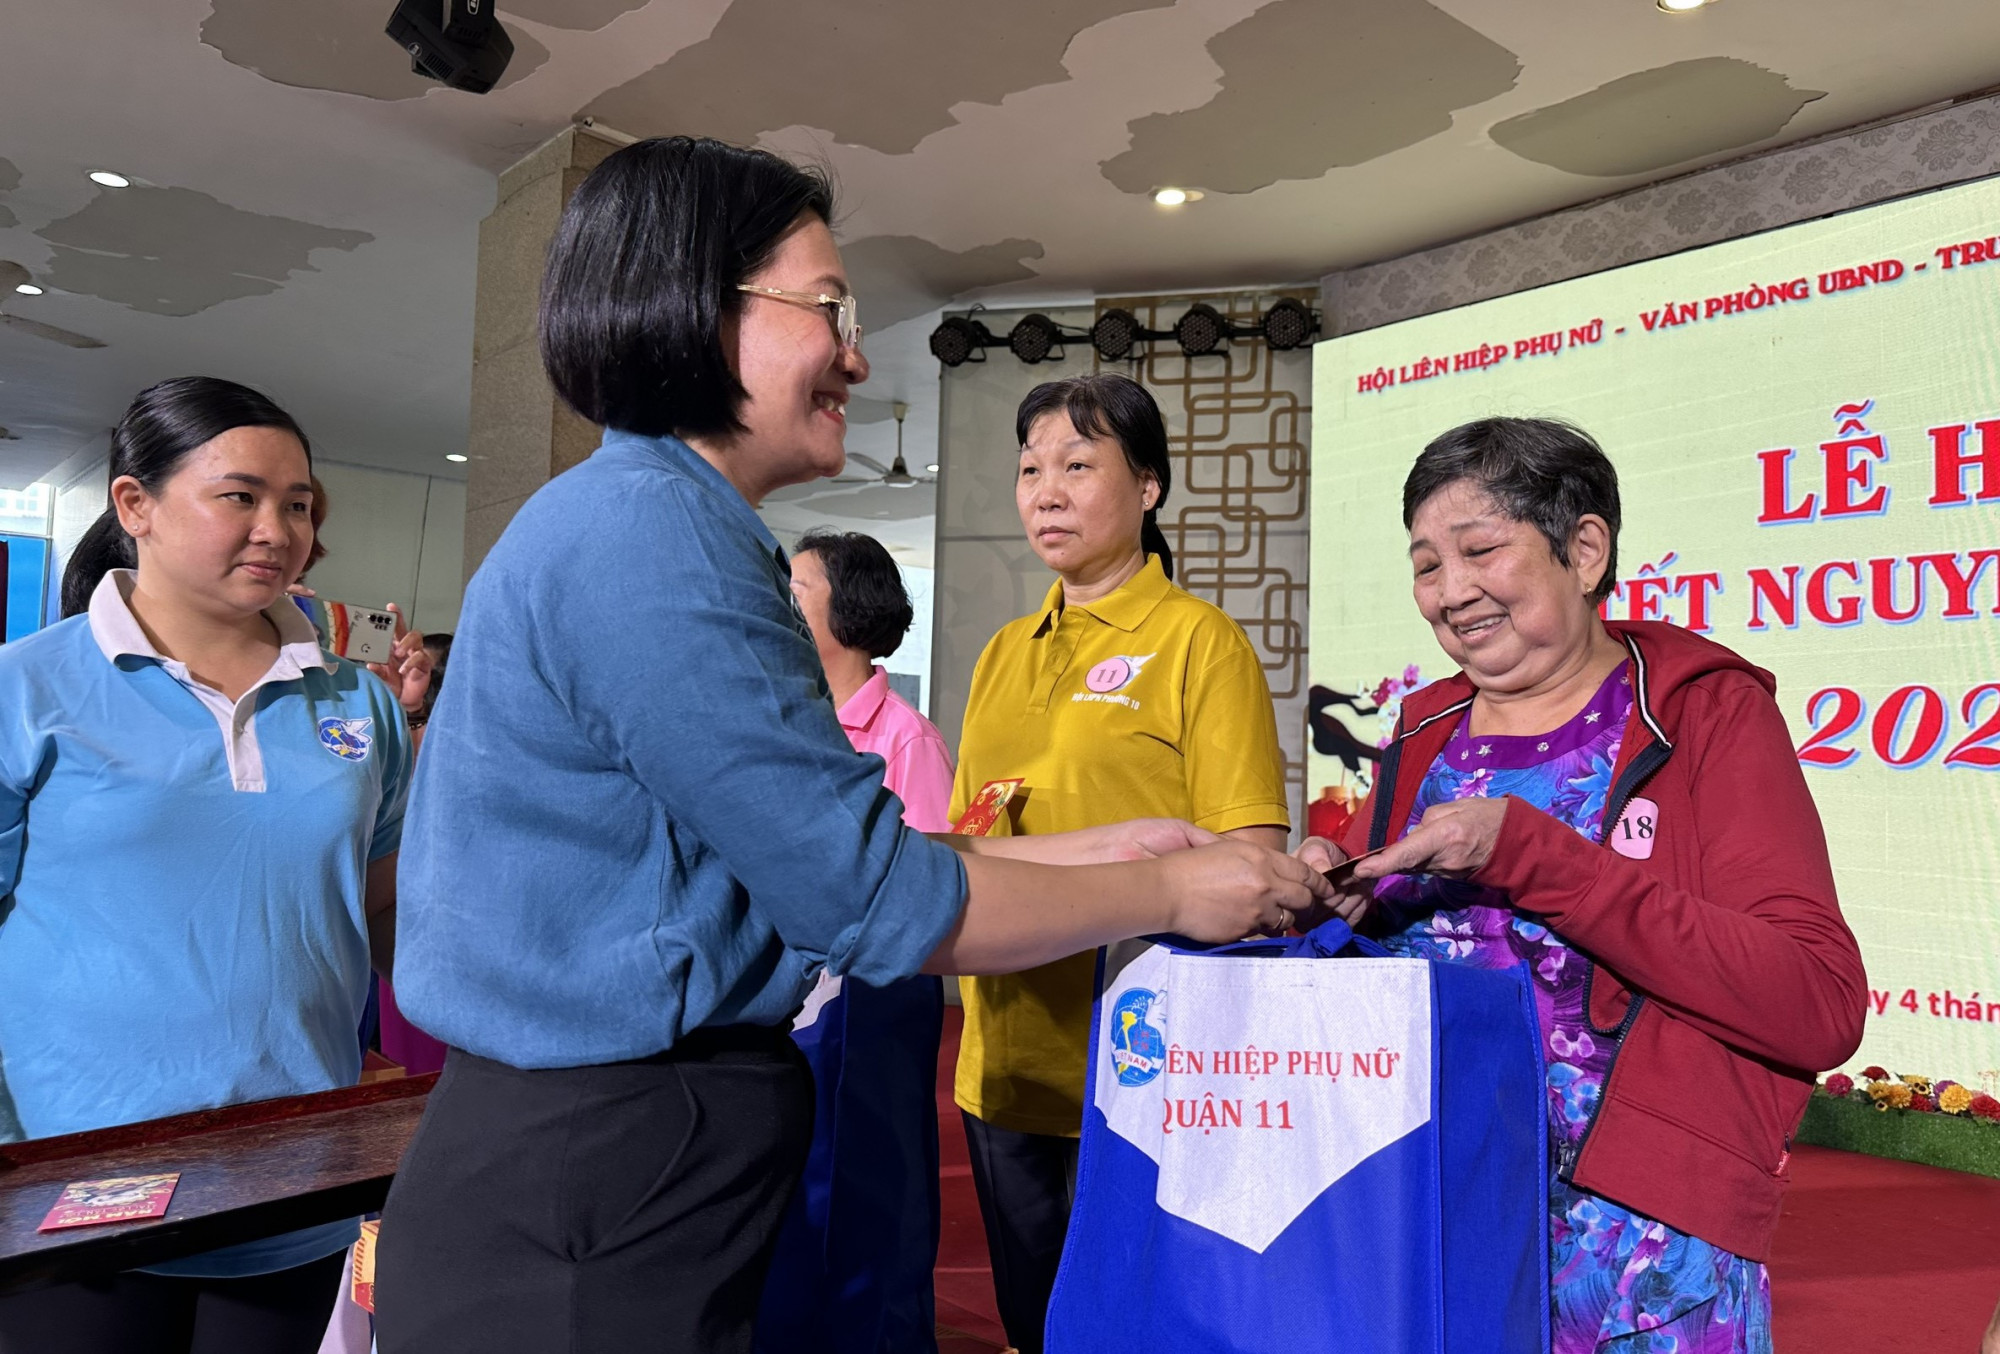 Chị Đoàn Thị Thanh Thủy - Chủ tịch Hội LHPN quận 11 tặng quà cho cán bộ, hội viên phụ nữ 